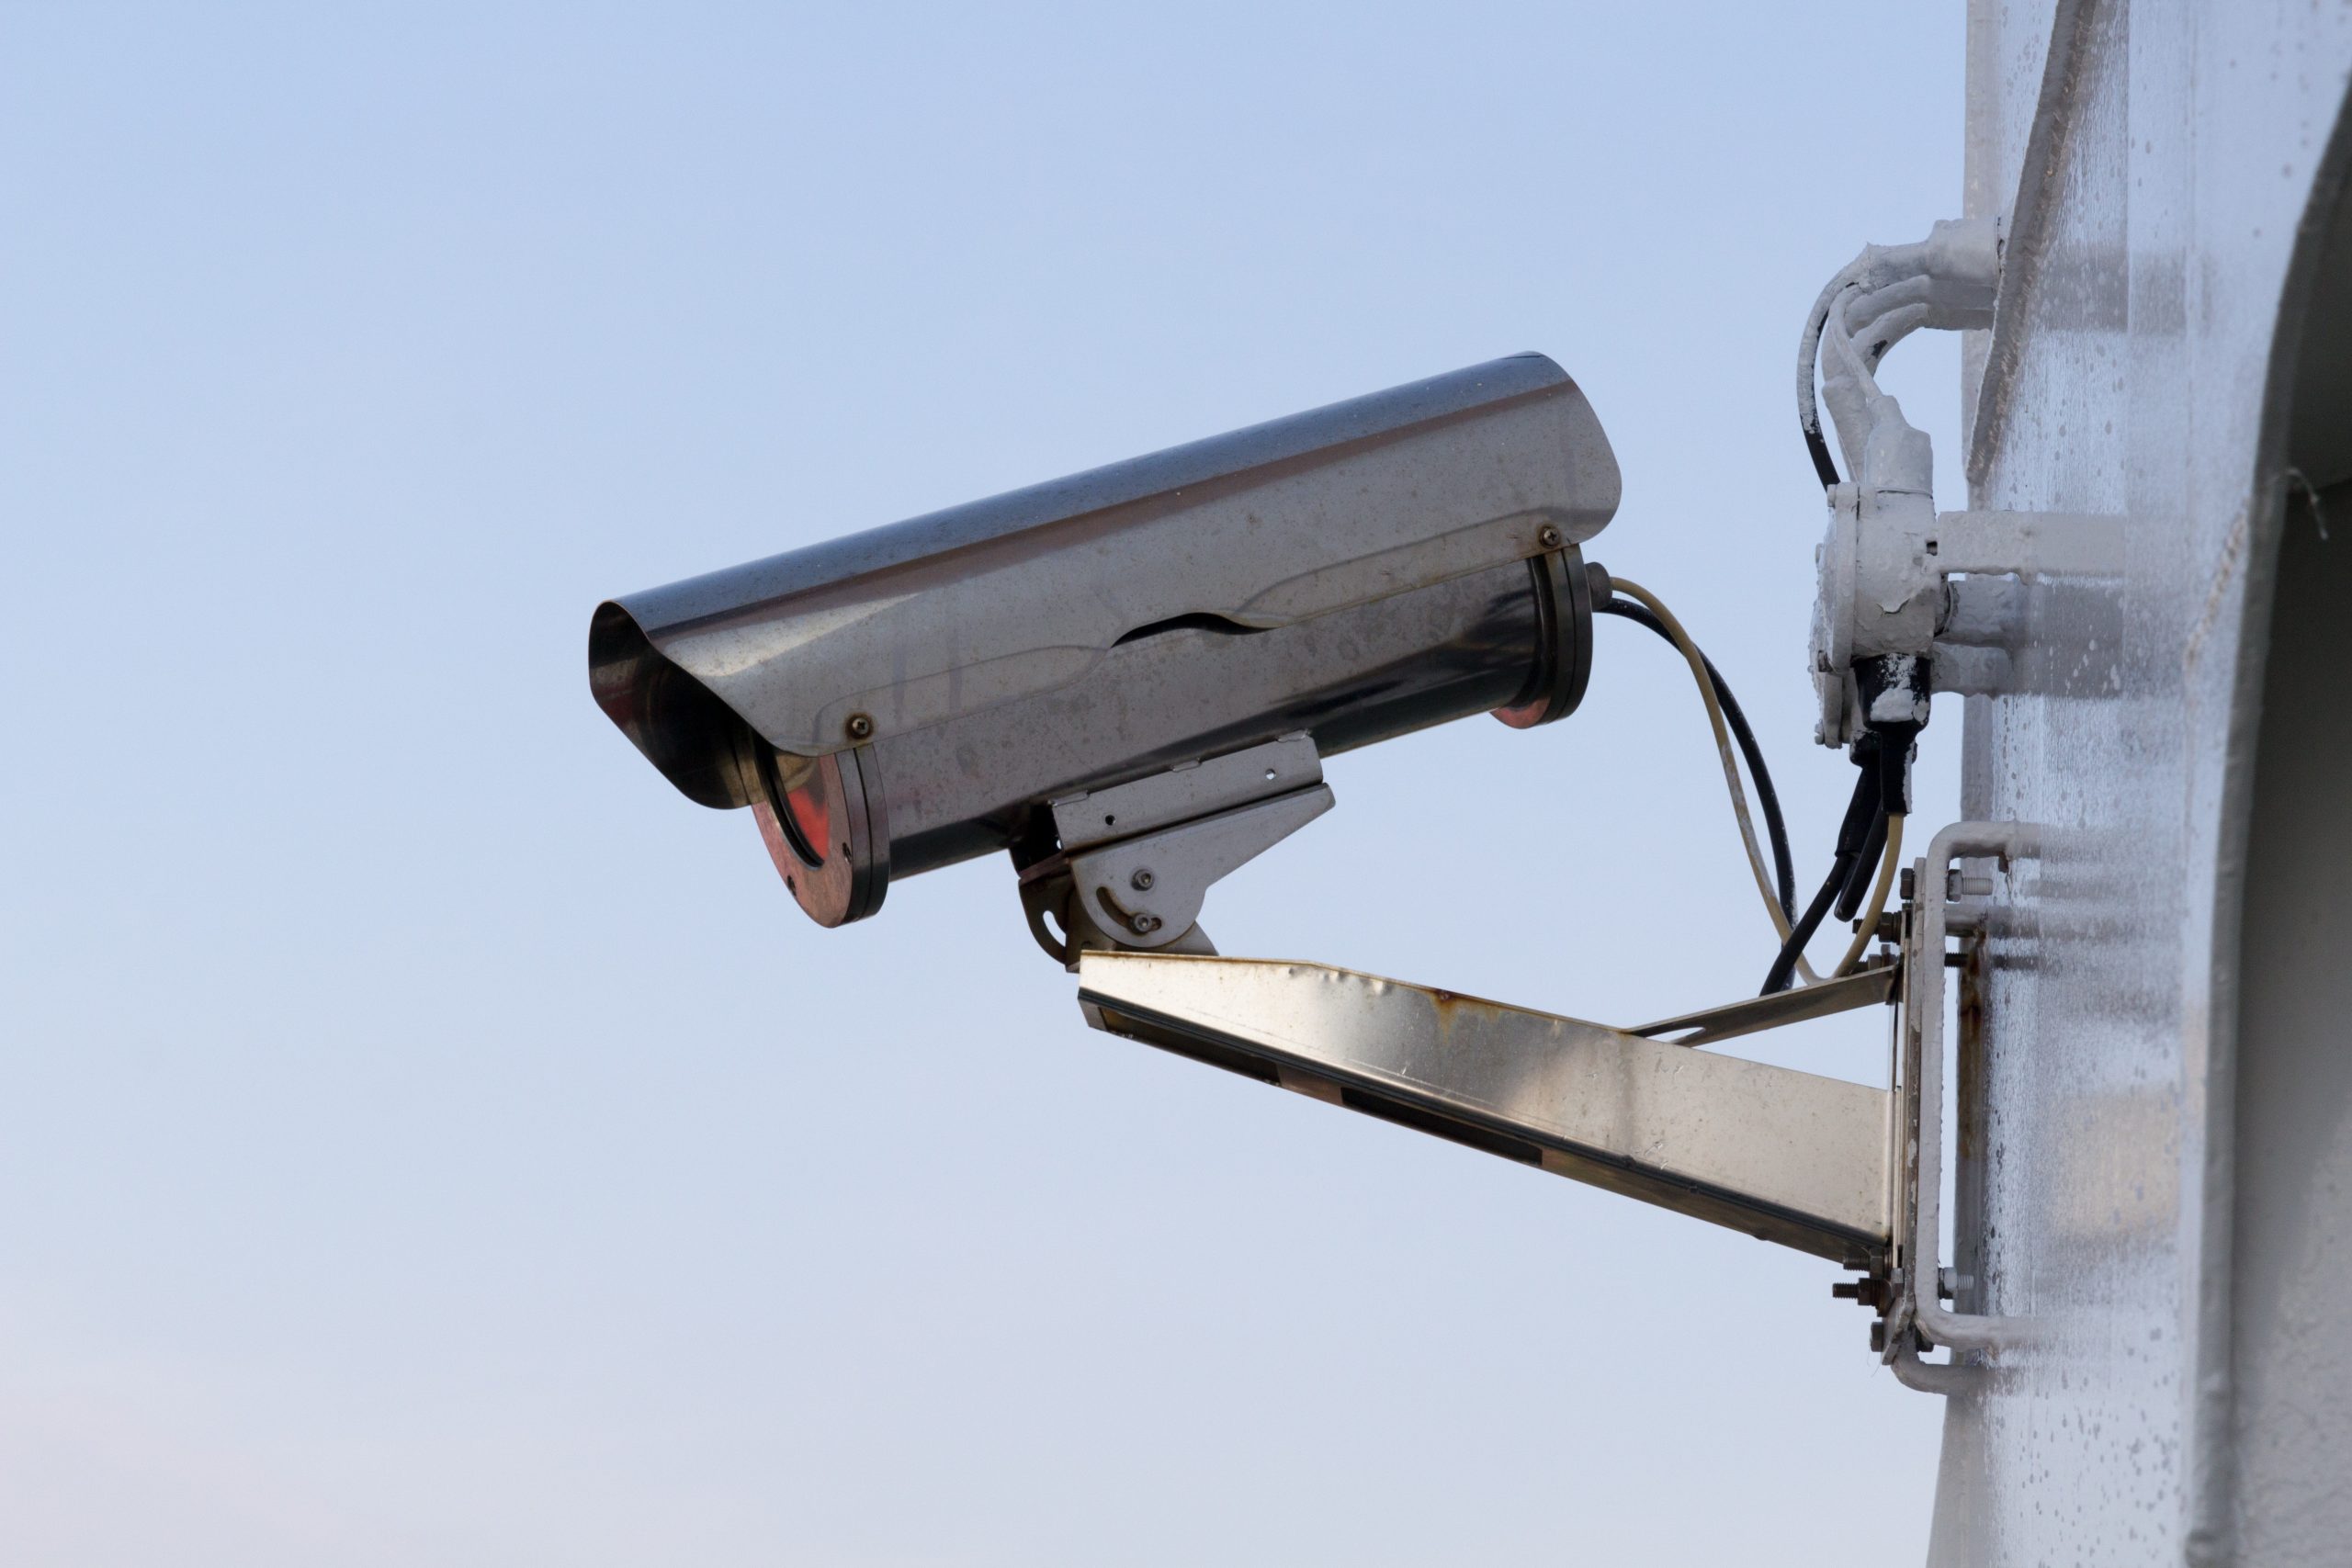 Peut-on pirater une caméra de surveillance filaire ?